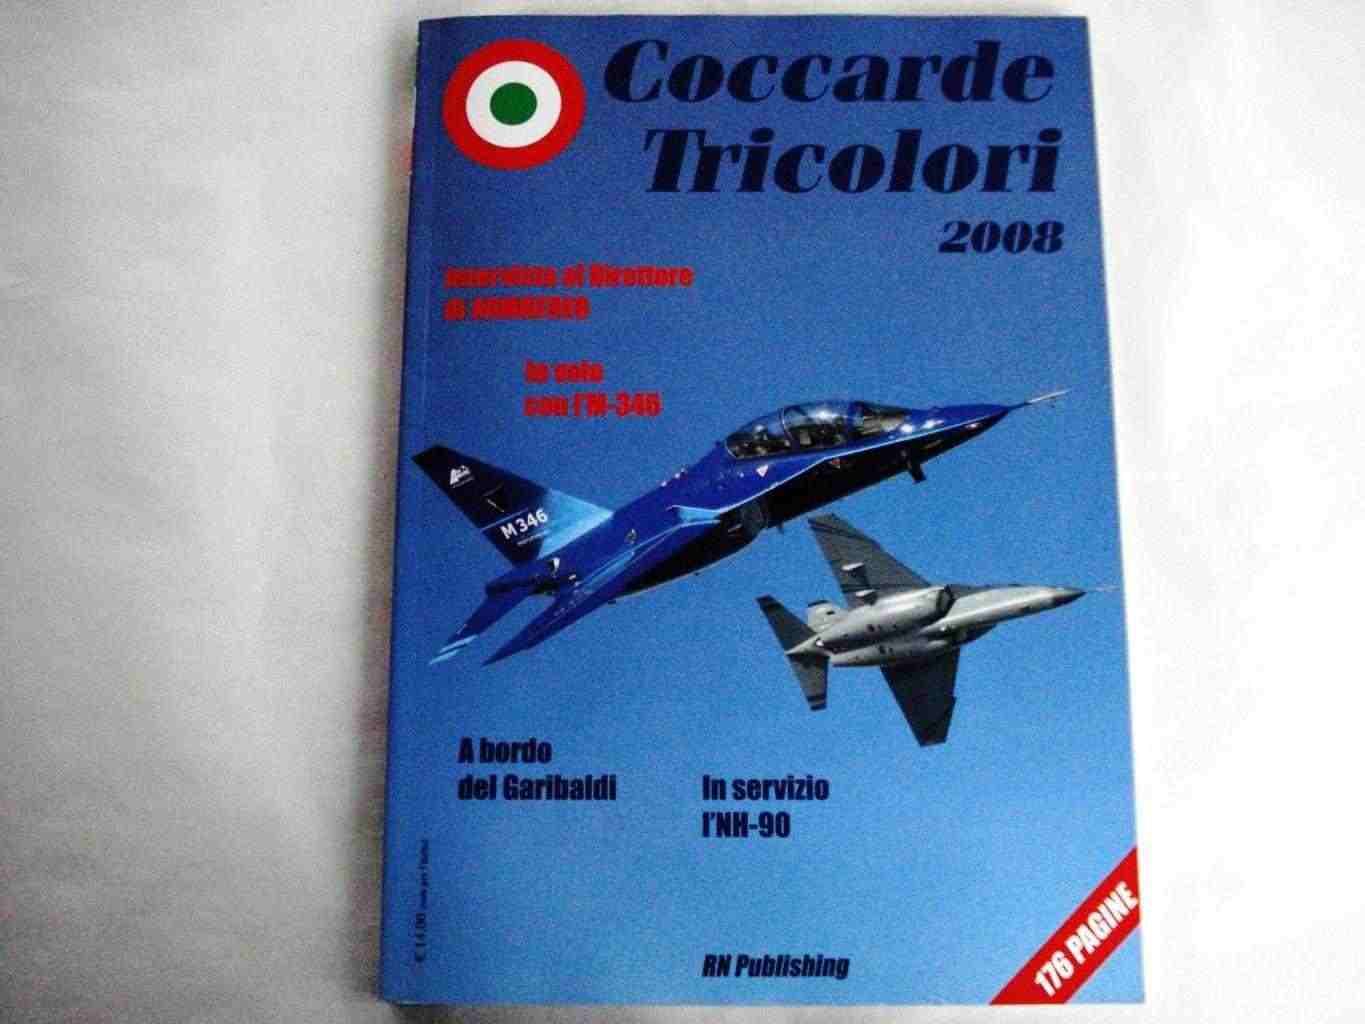 Aeronautica - Coccarde Tricolori 2008